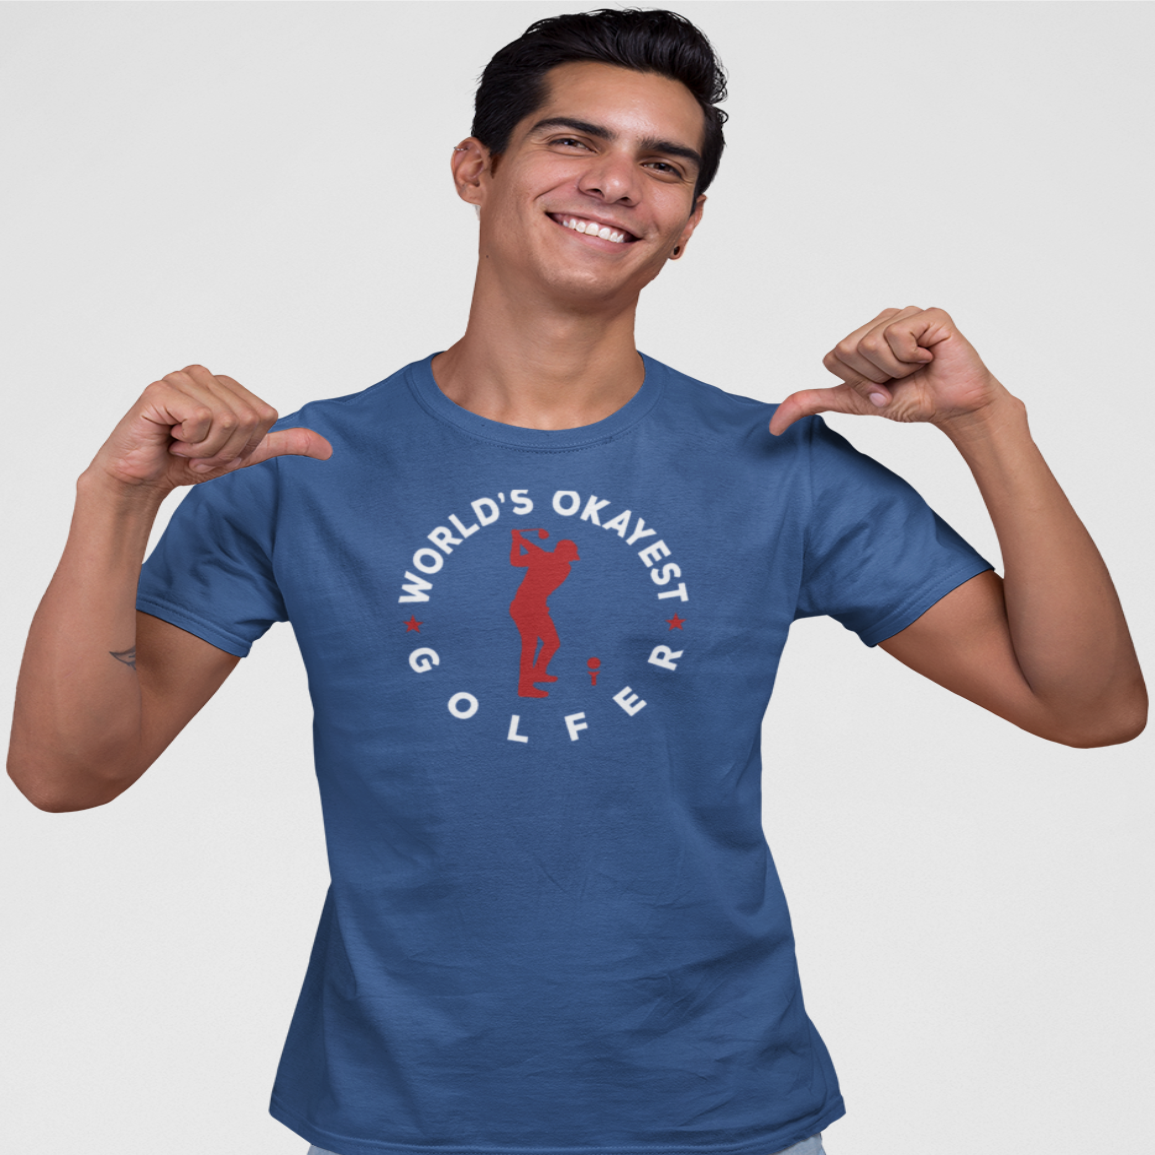 World's Okayest Golfer T-Shirt